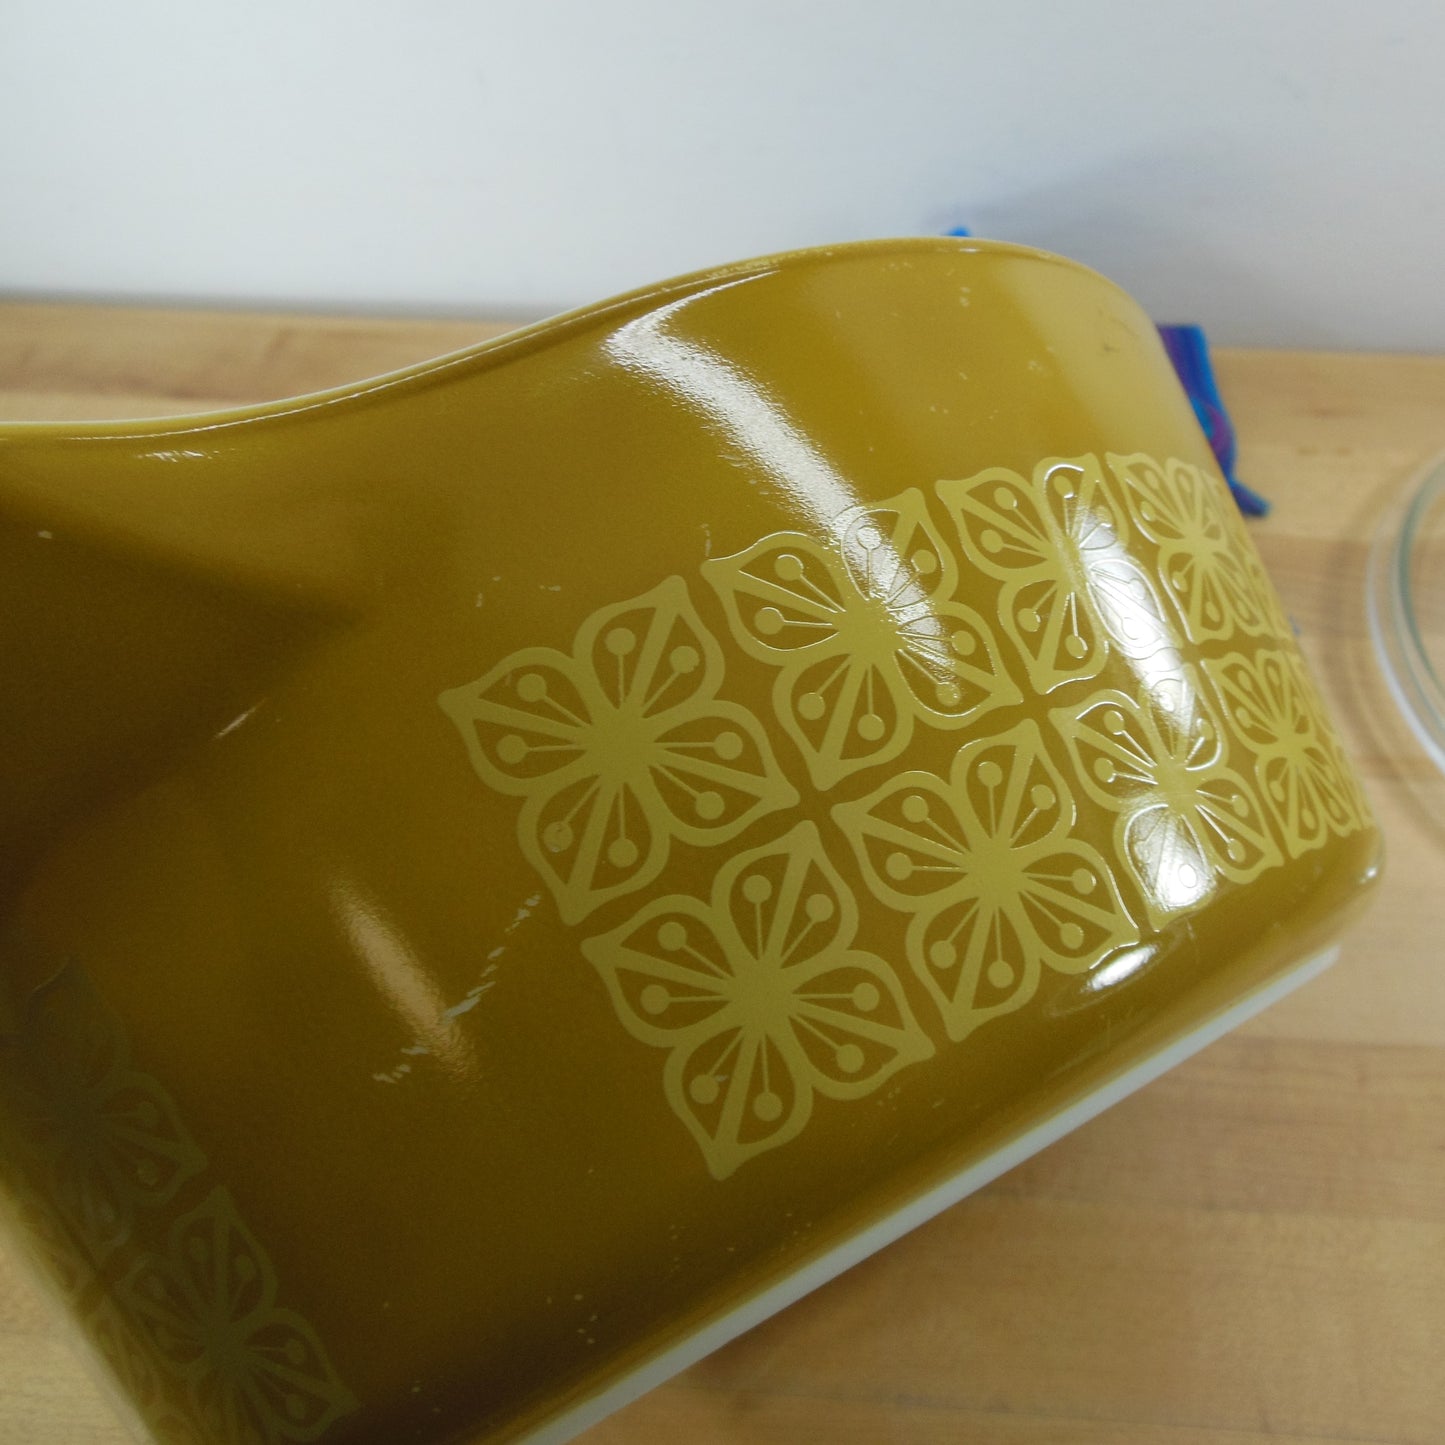 Pyrex Glass Autumn Floral 2-1/2 Quart Casserole Dish 475-B Gold YellowScratch